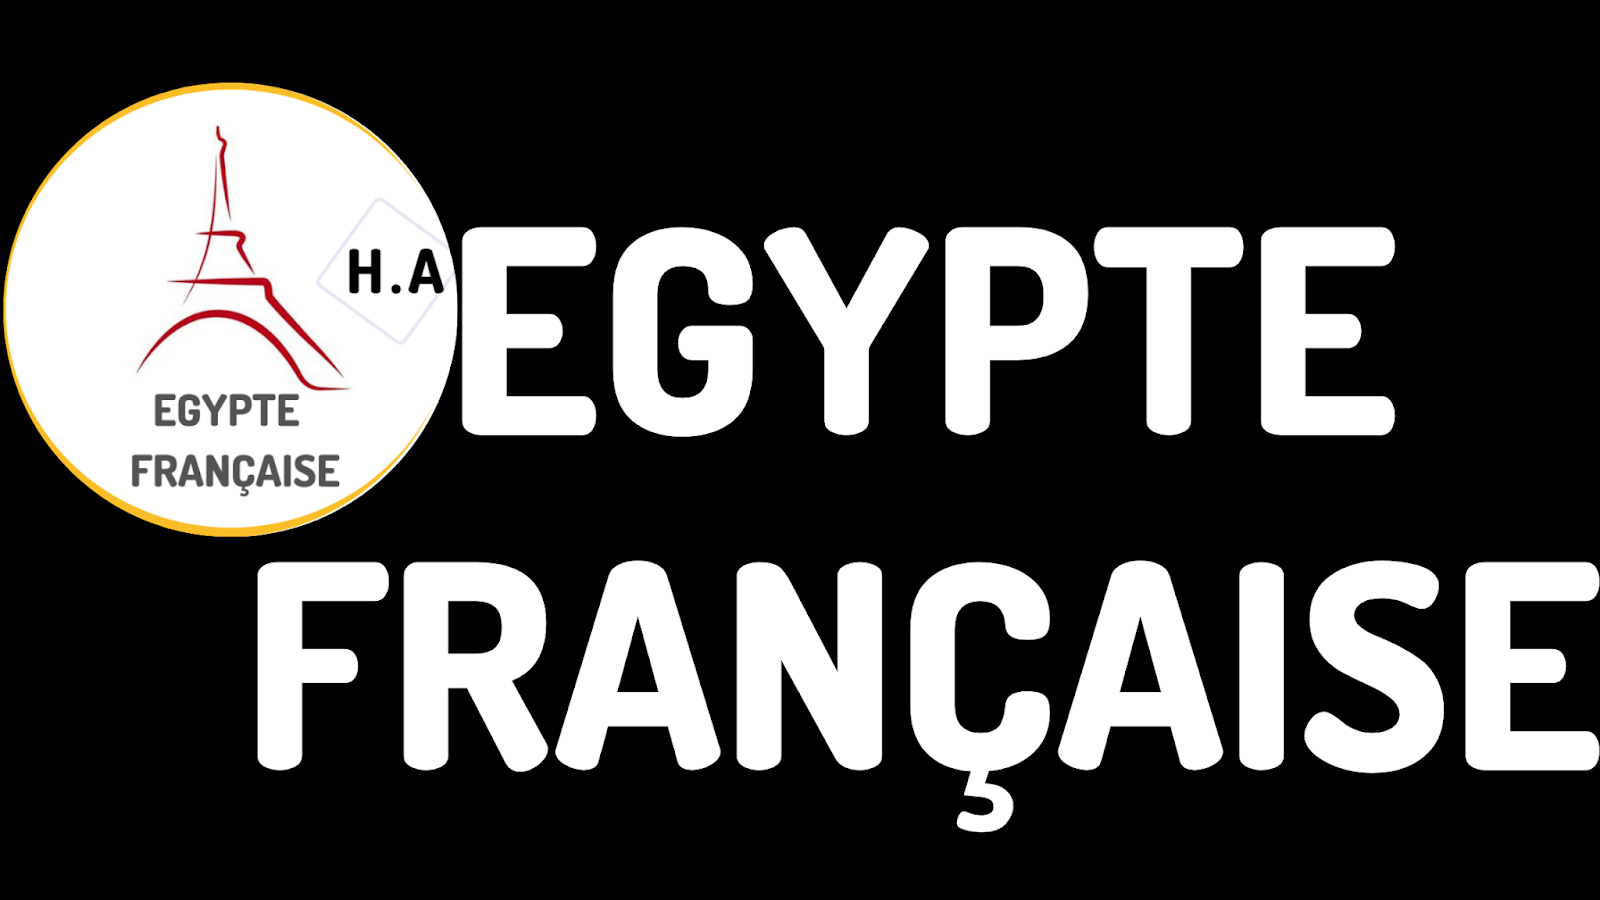 Egyptɐ FranÇaisɐ - Apprendre le français